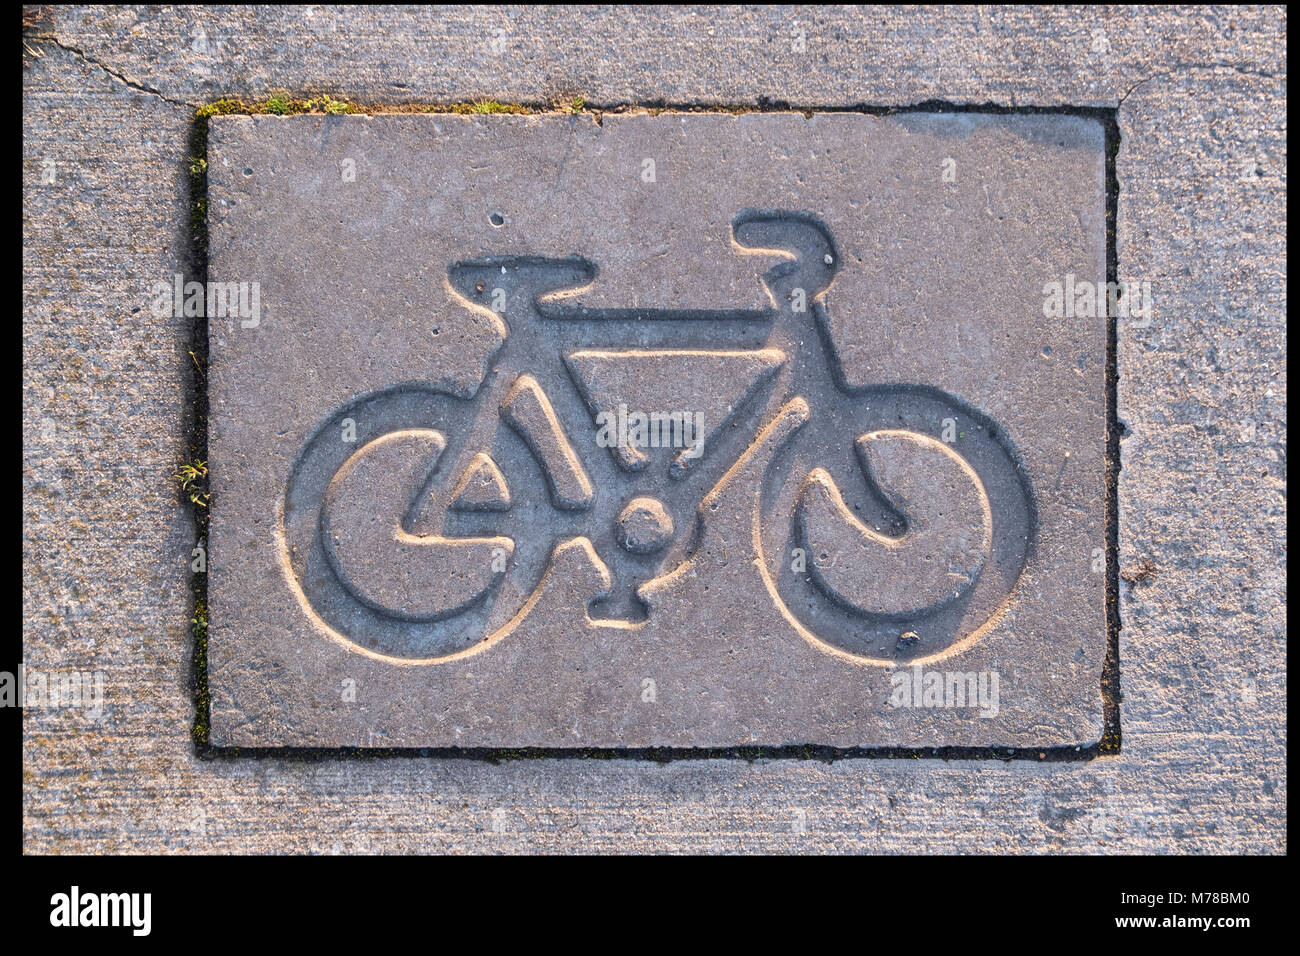 Fahrrad lane Zeichen in Beton gegossen Stockfoto